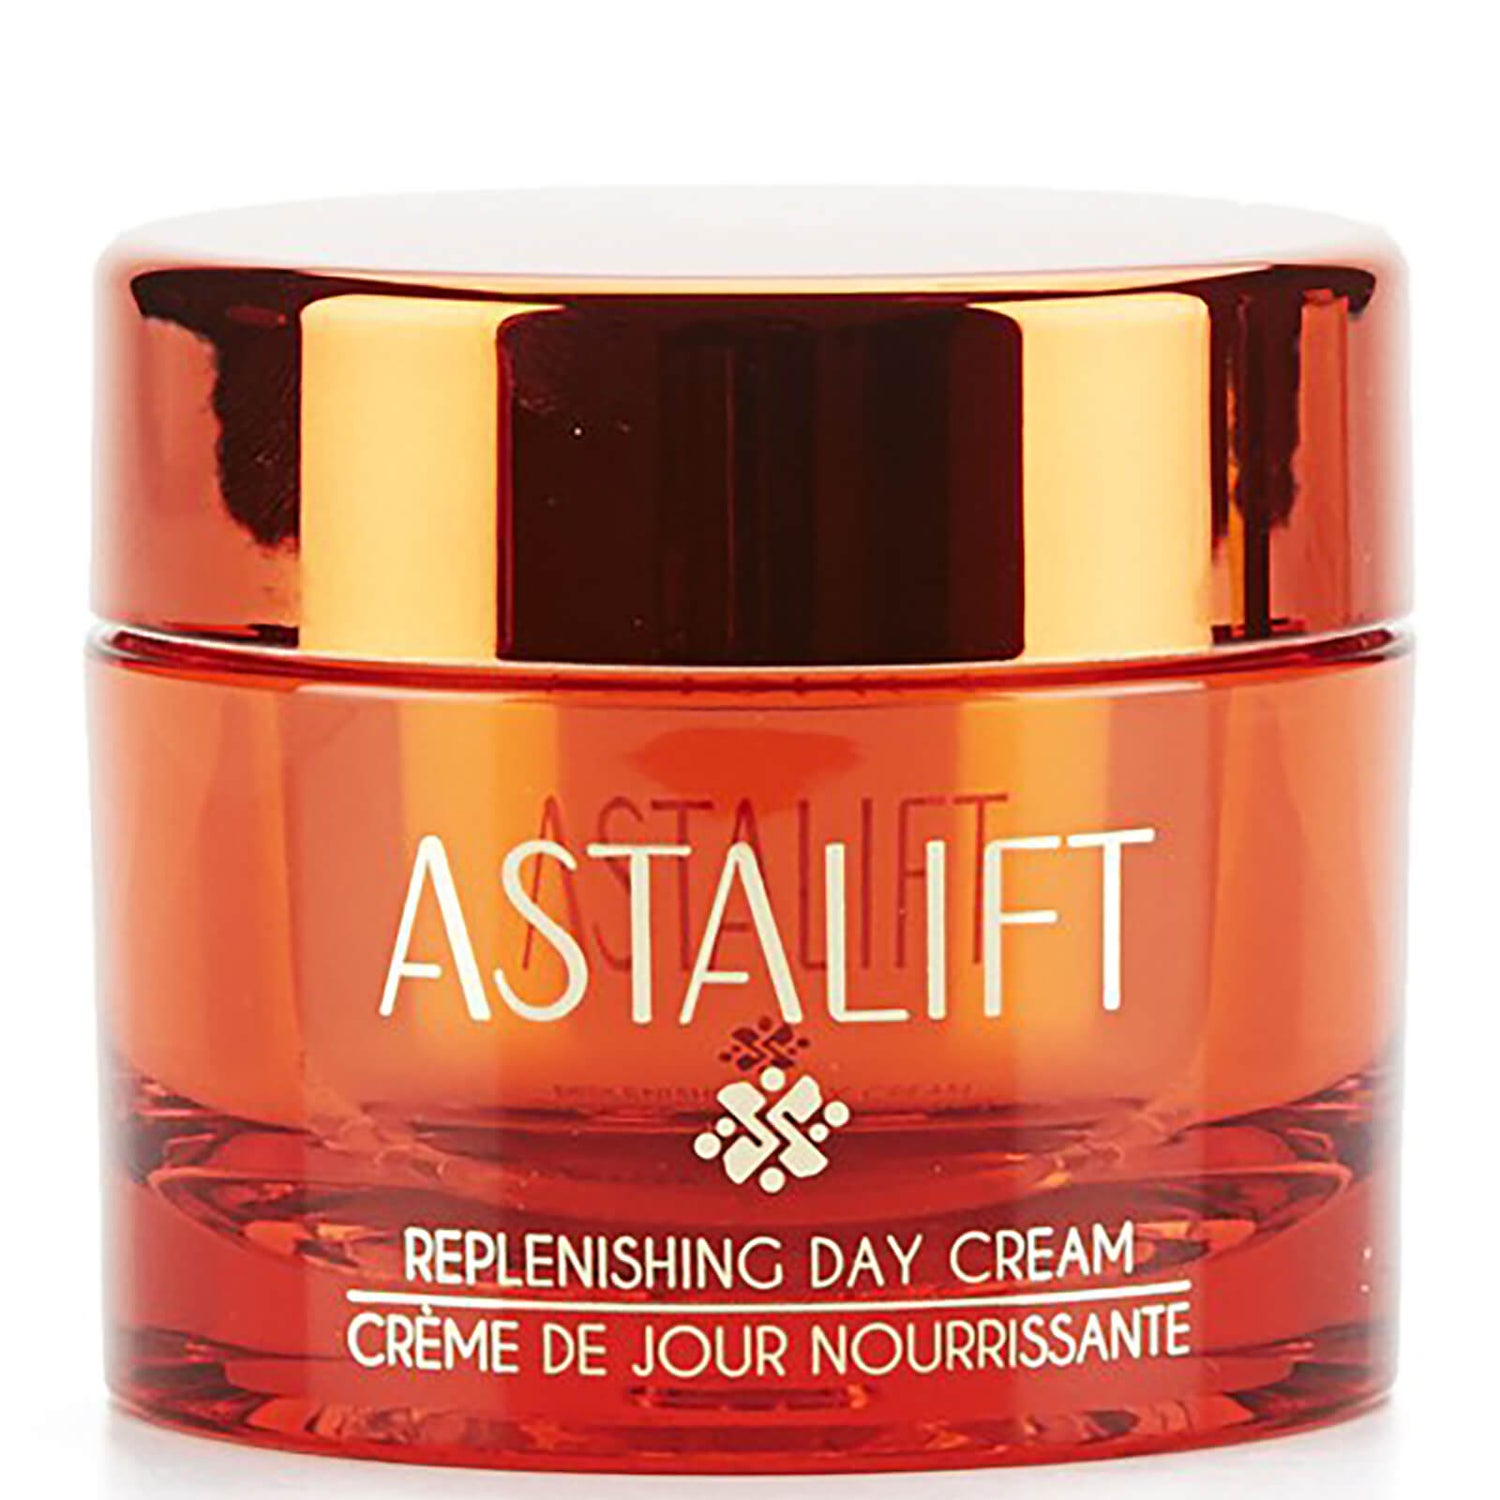 Astalift crème de jour renouvelante (30g)